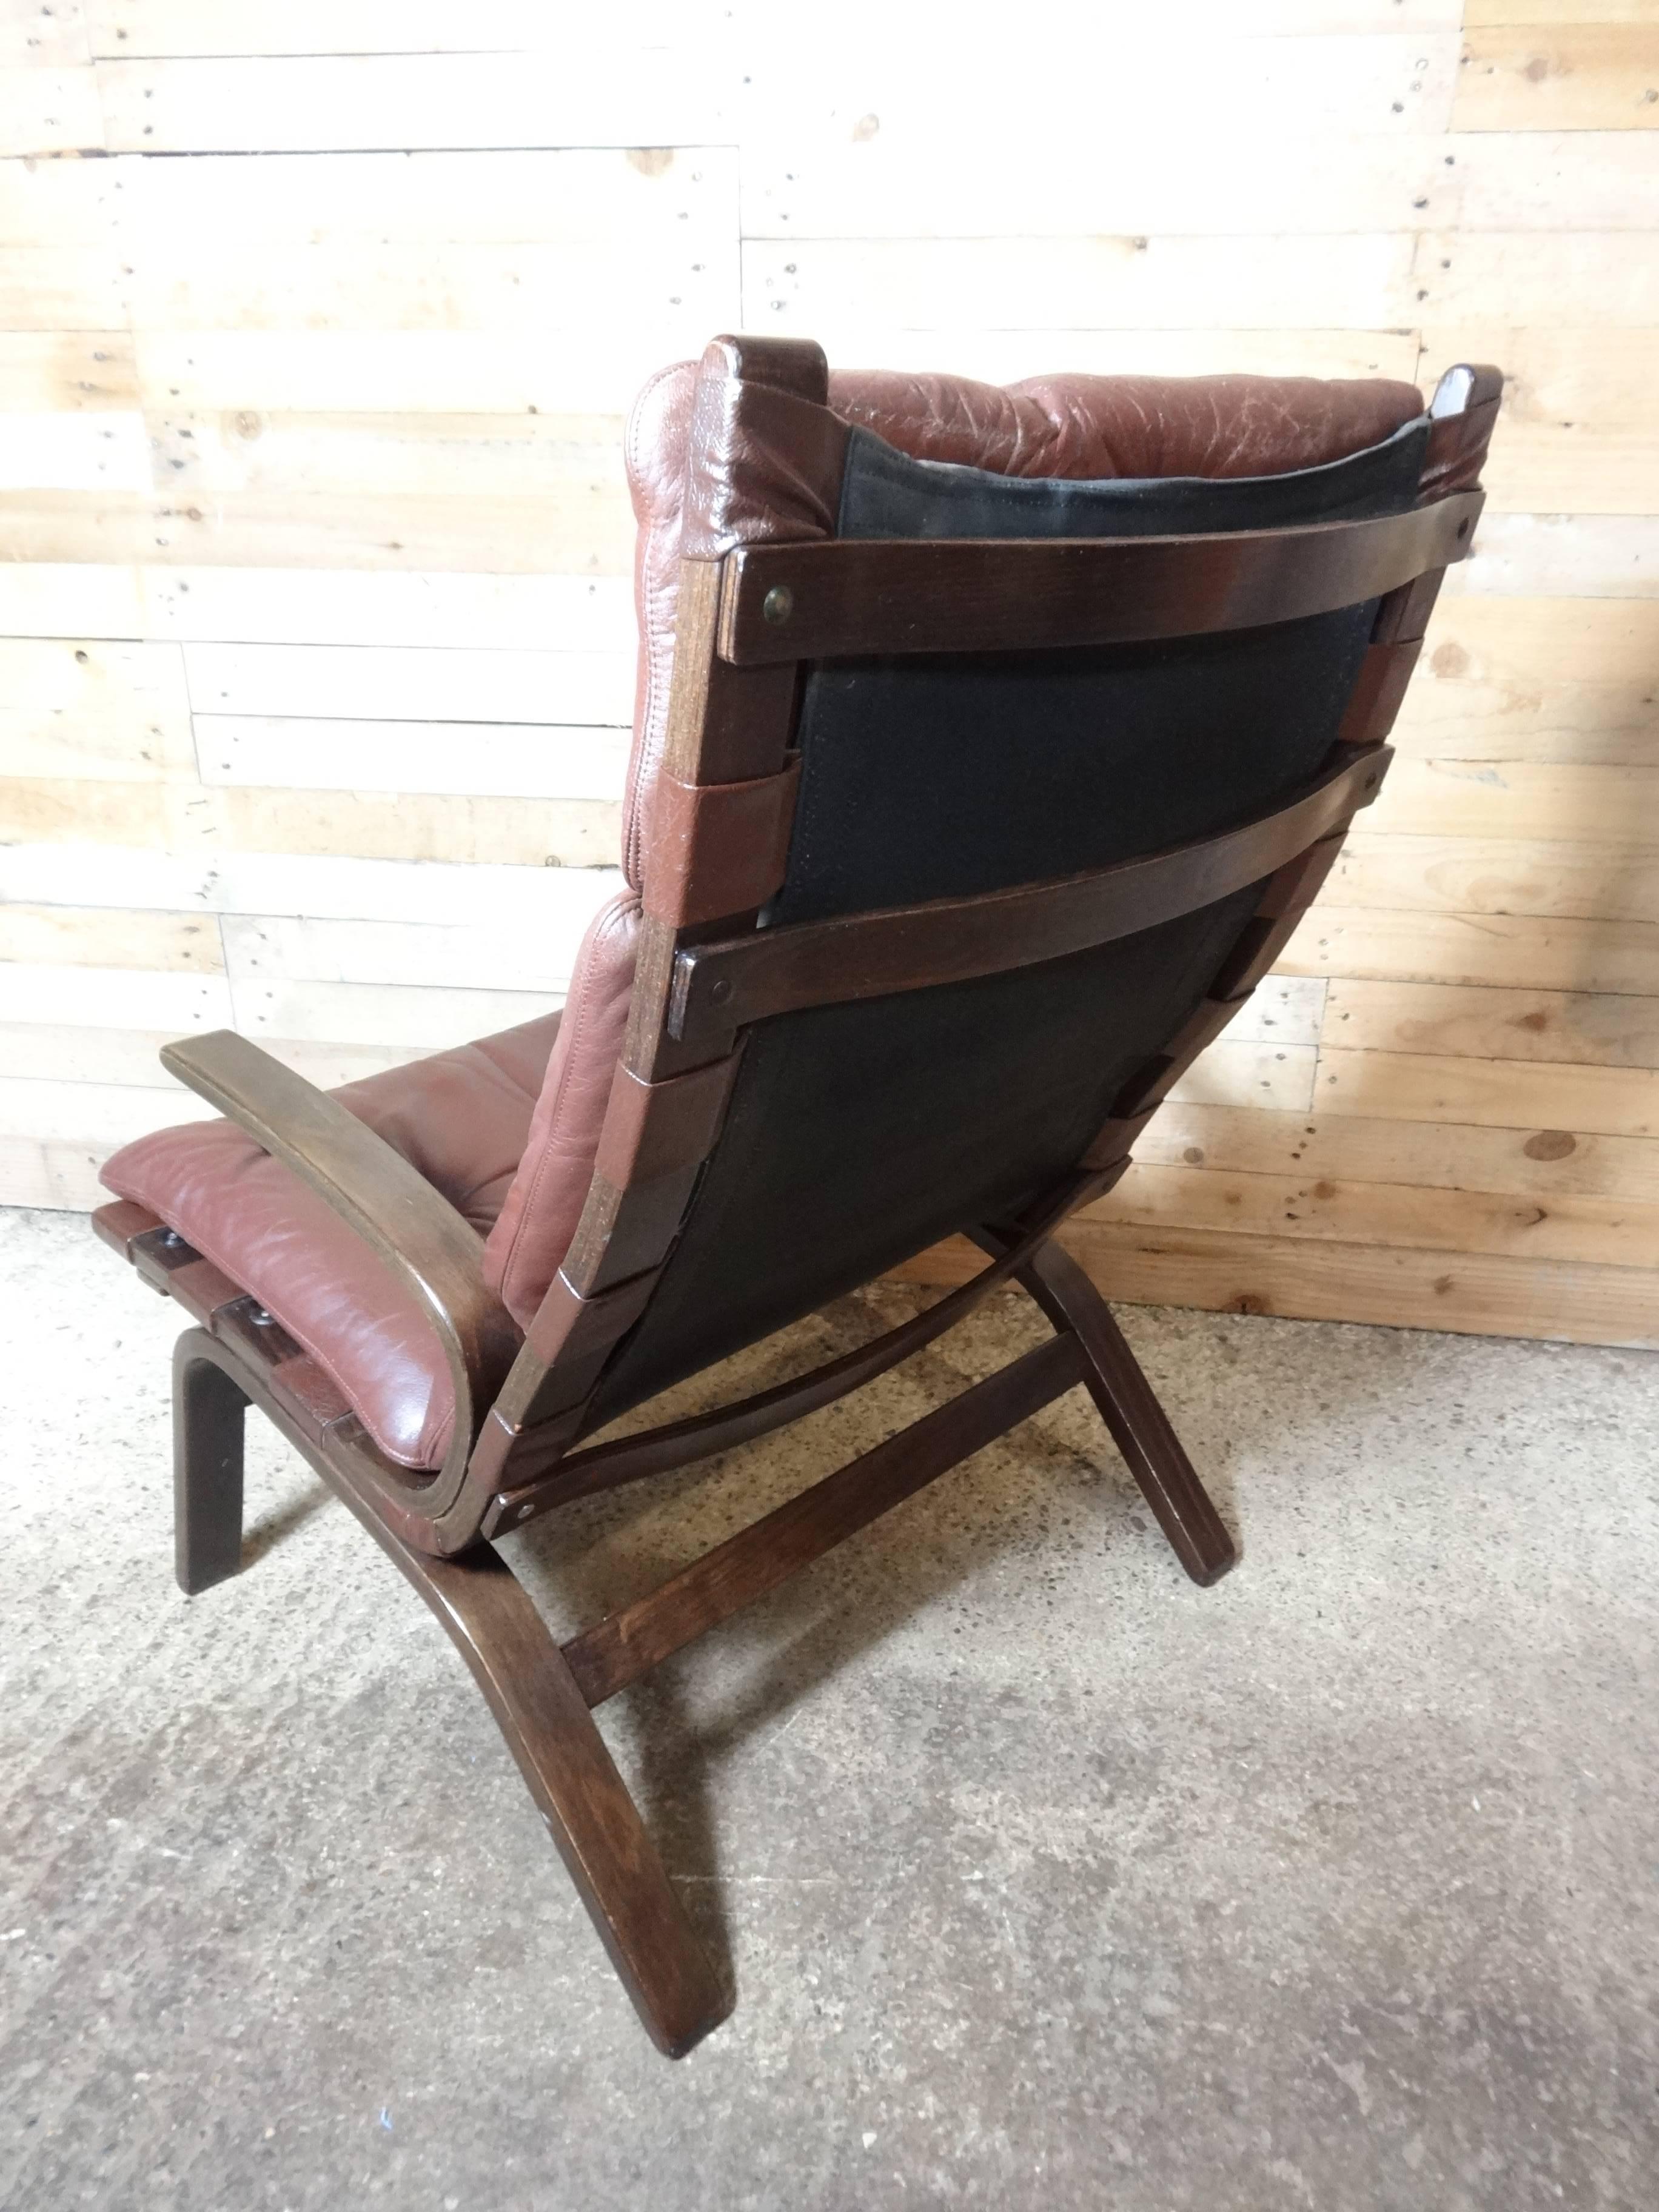 1960 rétro vintage original Scandinave Ingmar Relling design bentwood  chaise recouverte d'un beau cuir rétro


Dimensions de la chaise (approximatives) : hauteur du siège 38 cm, hauteur du dossier 94 cm, profondeur 80 cm, largeur 64 cm.

Une